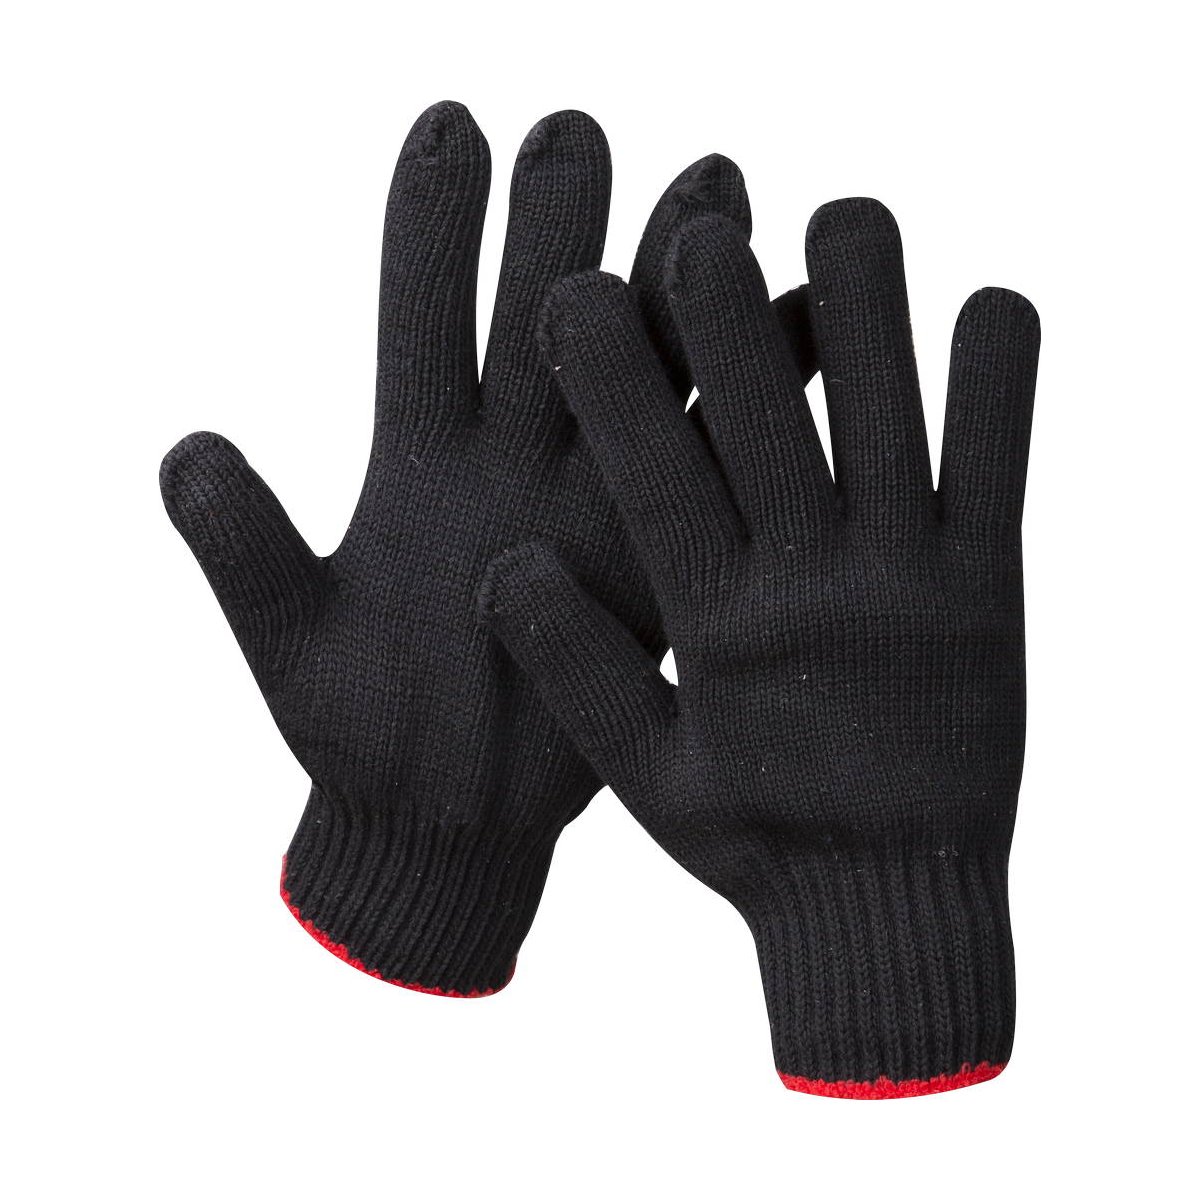 Трикотажные перчатки ЗУБР Стандарт р. L-XL утепленные (11461-XL)Купить